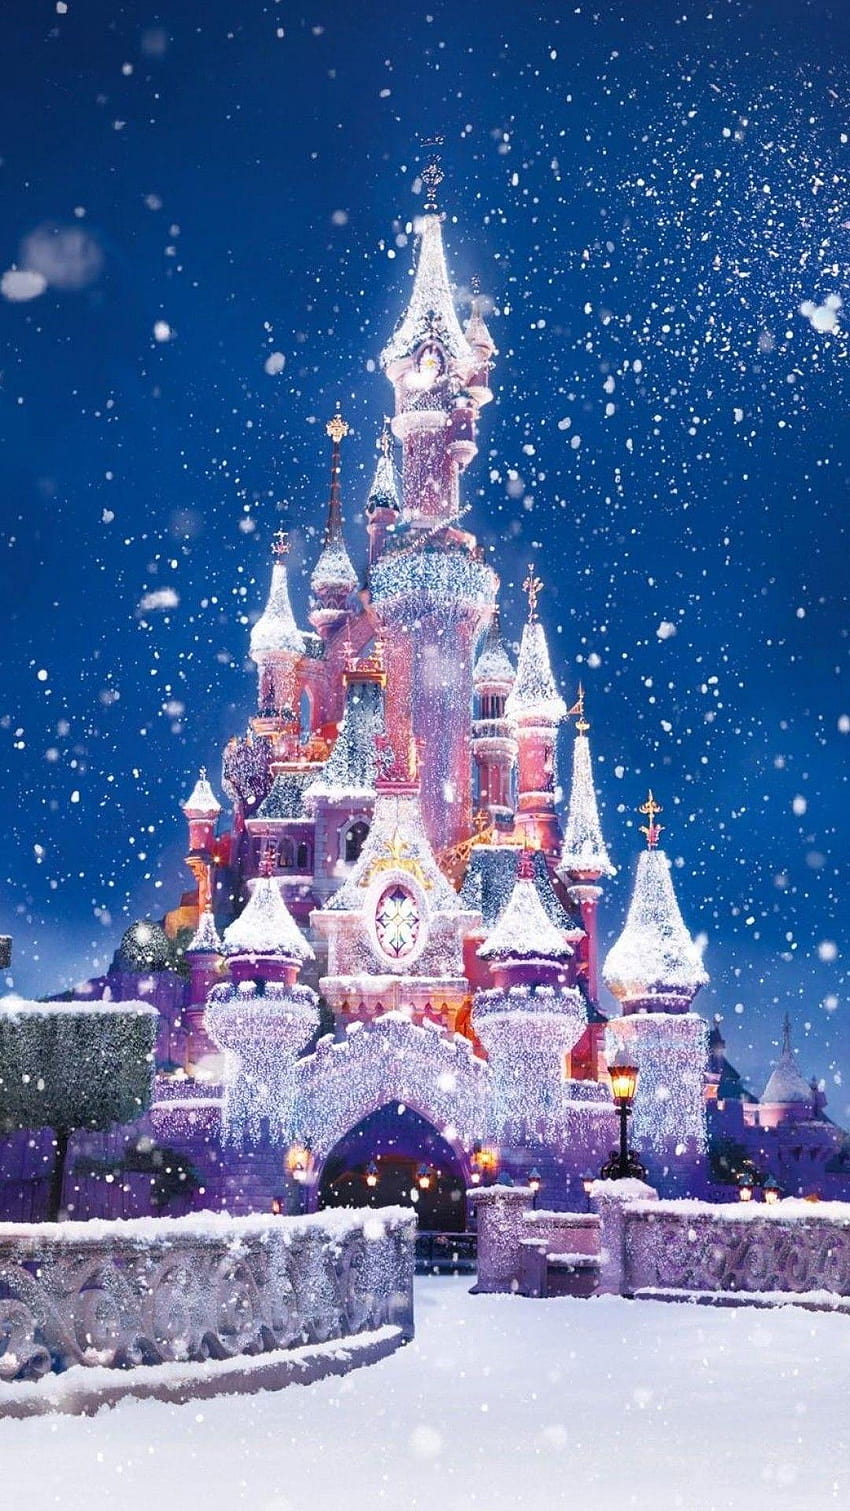 Teléfono de nieve con luces de Navidad del castillo de Disney, teléfono de Navidad de Disney fondo de pantalla del teléfono